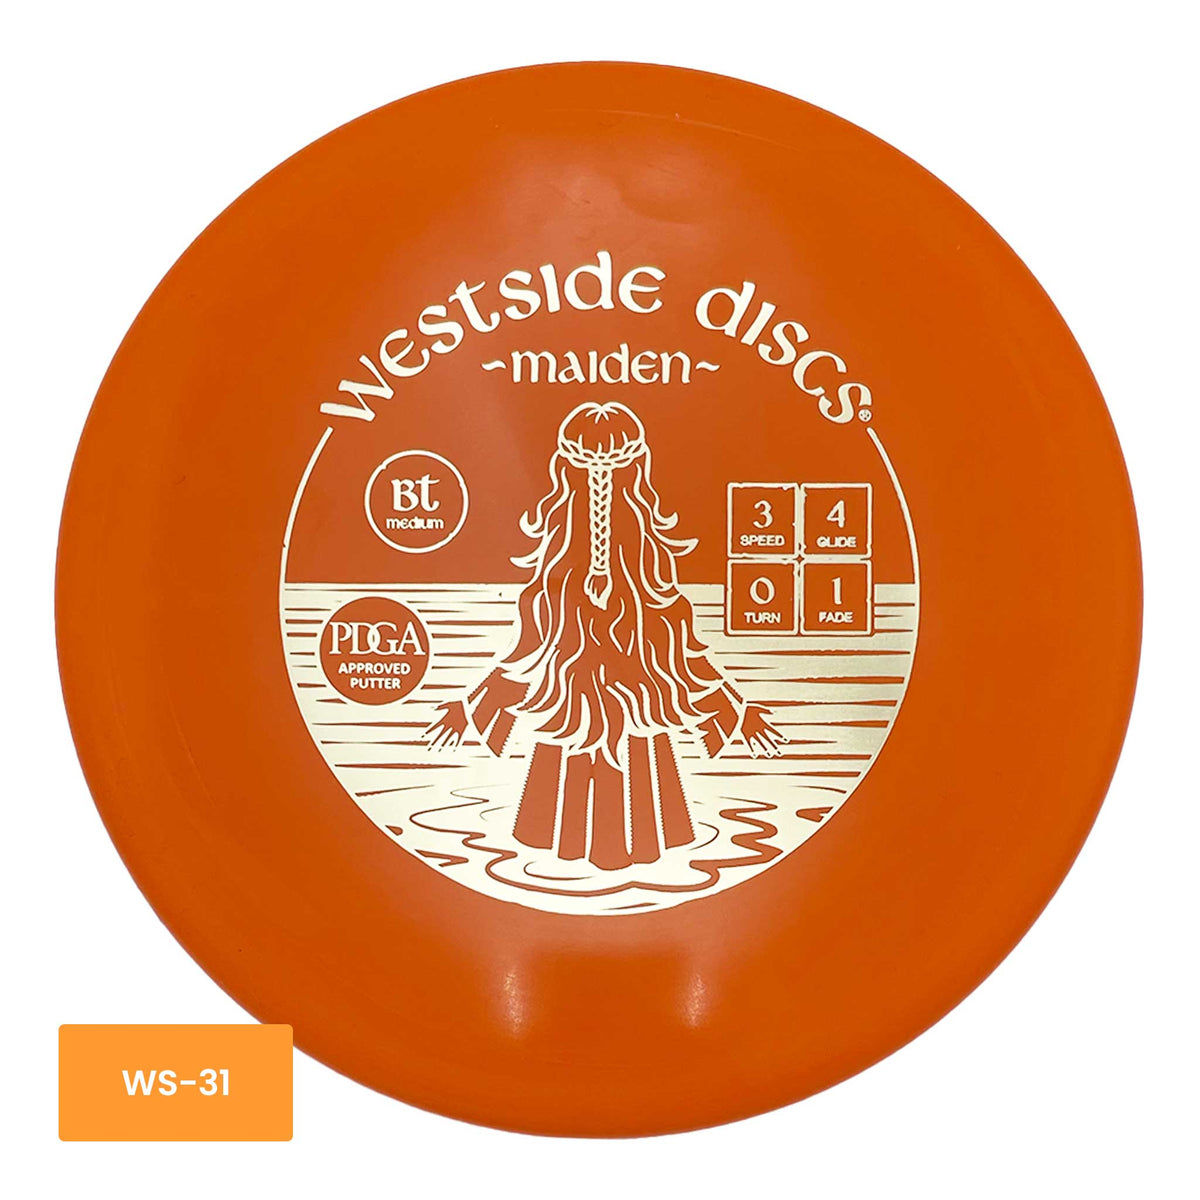 Westside Discs BT Medium Maiden putter and approach - Orange